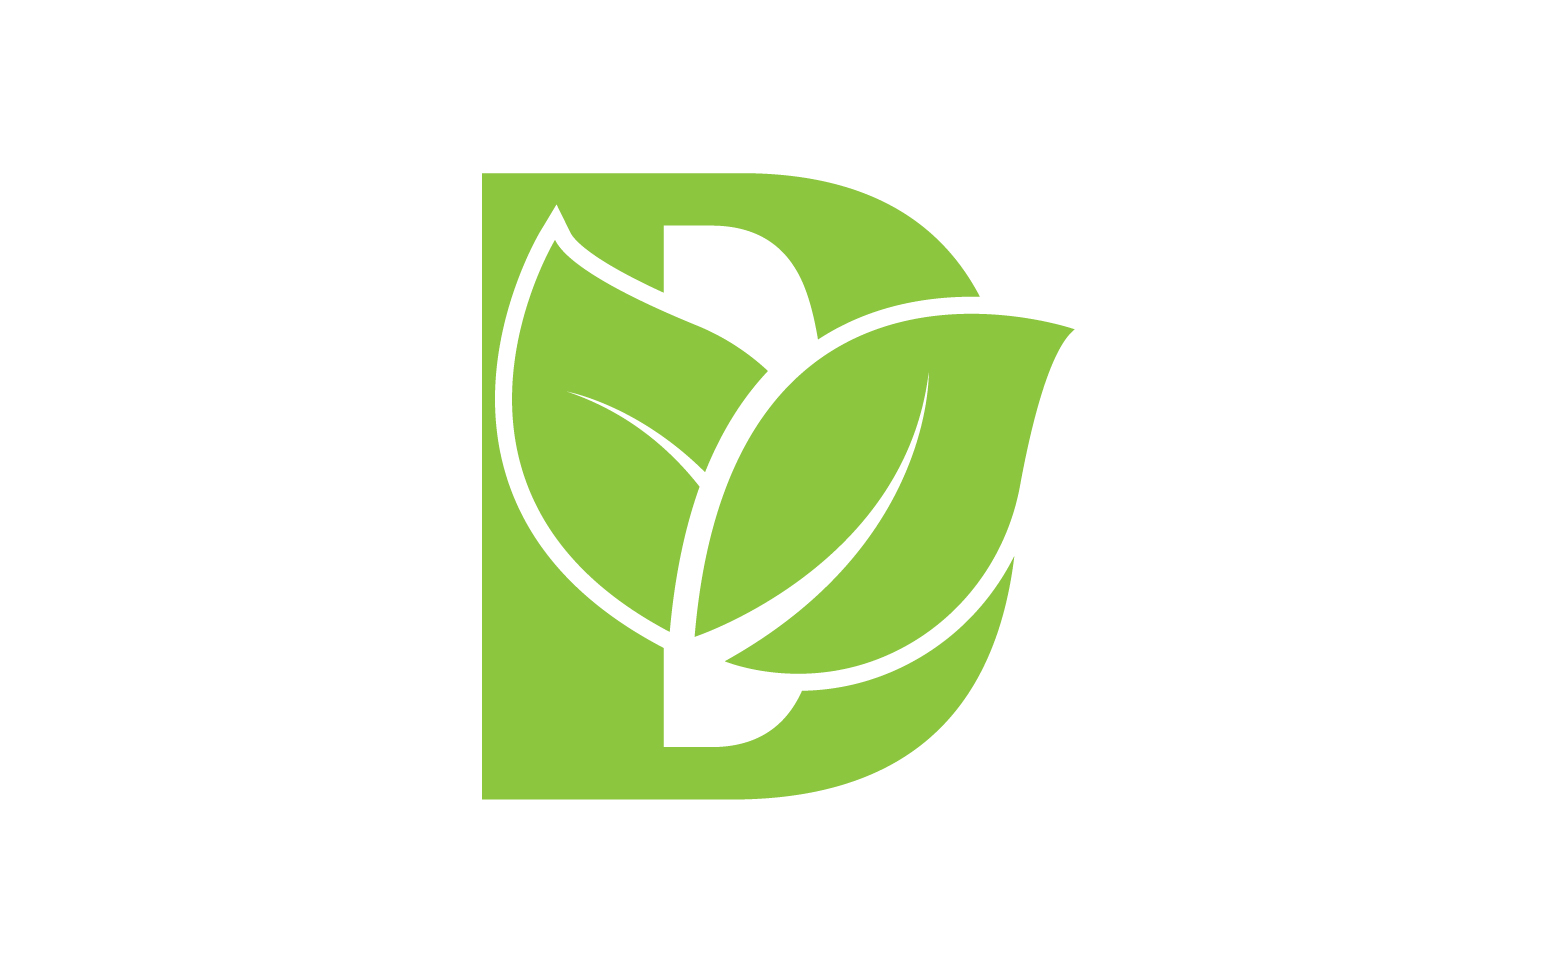 D letter logo leaf green vector version v 45